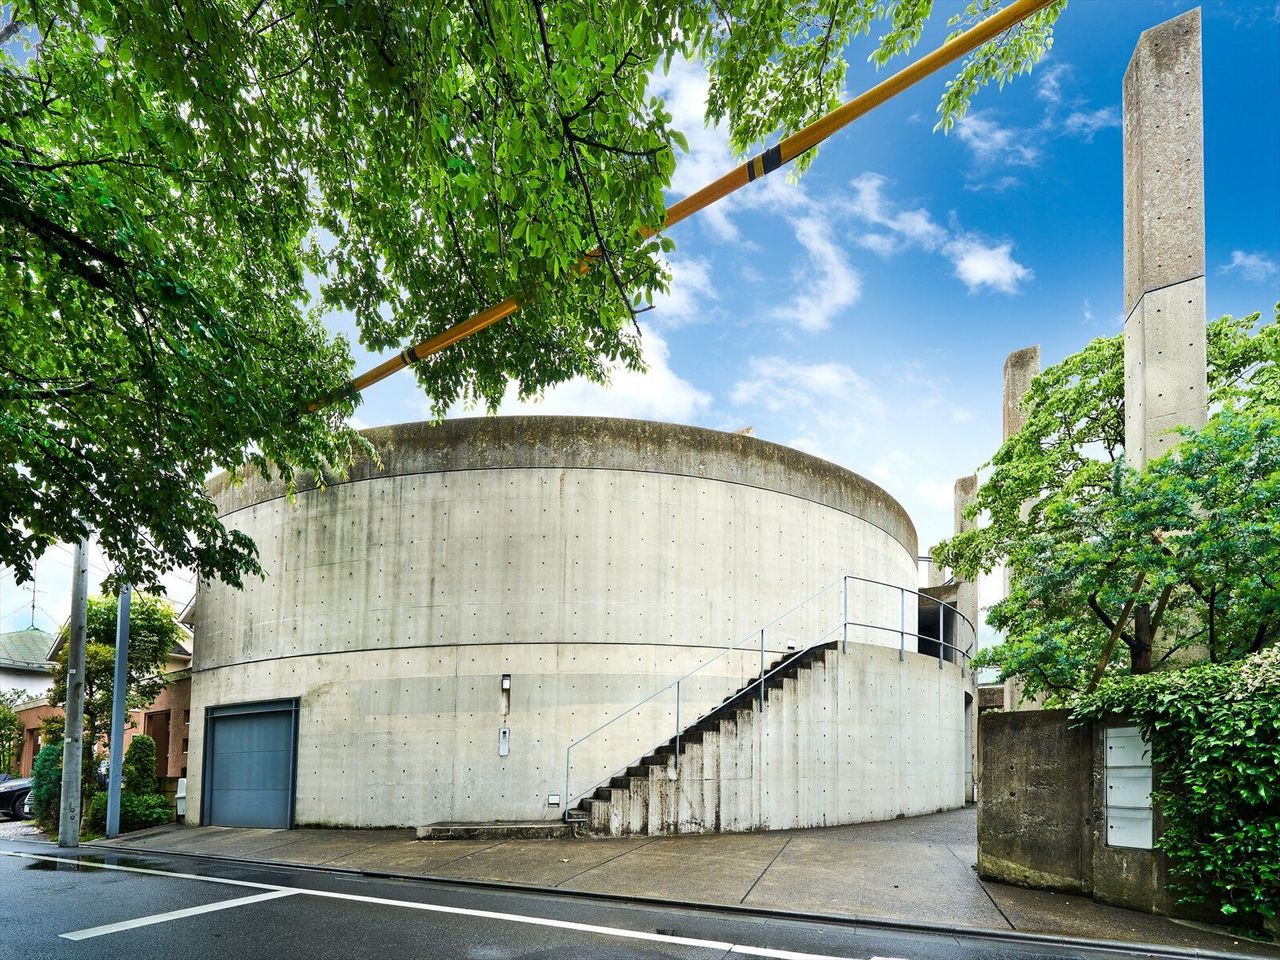 Tadao Ando’s Curved Concrete Ito House